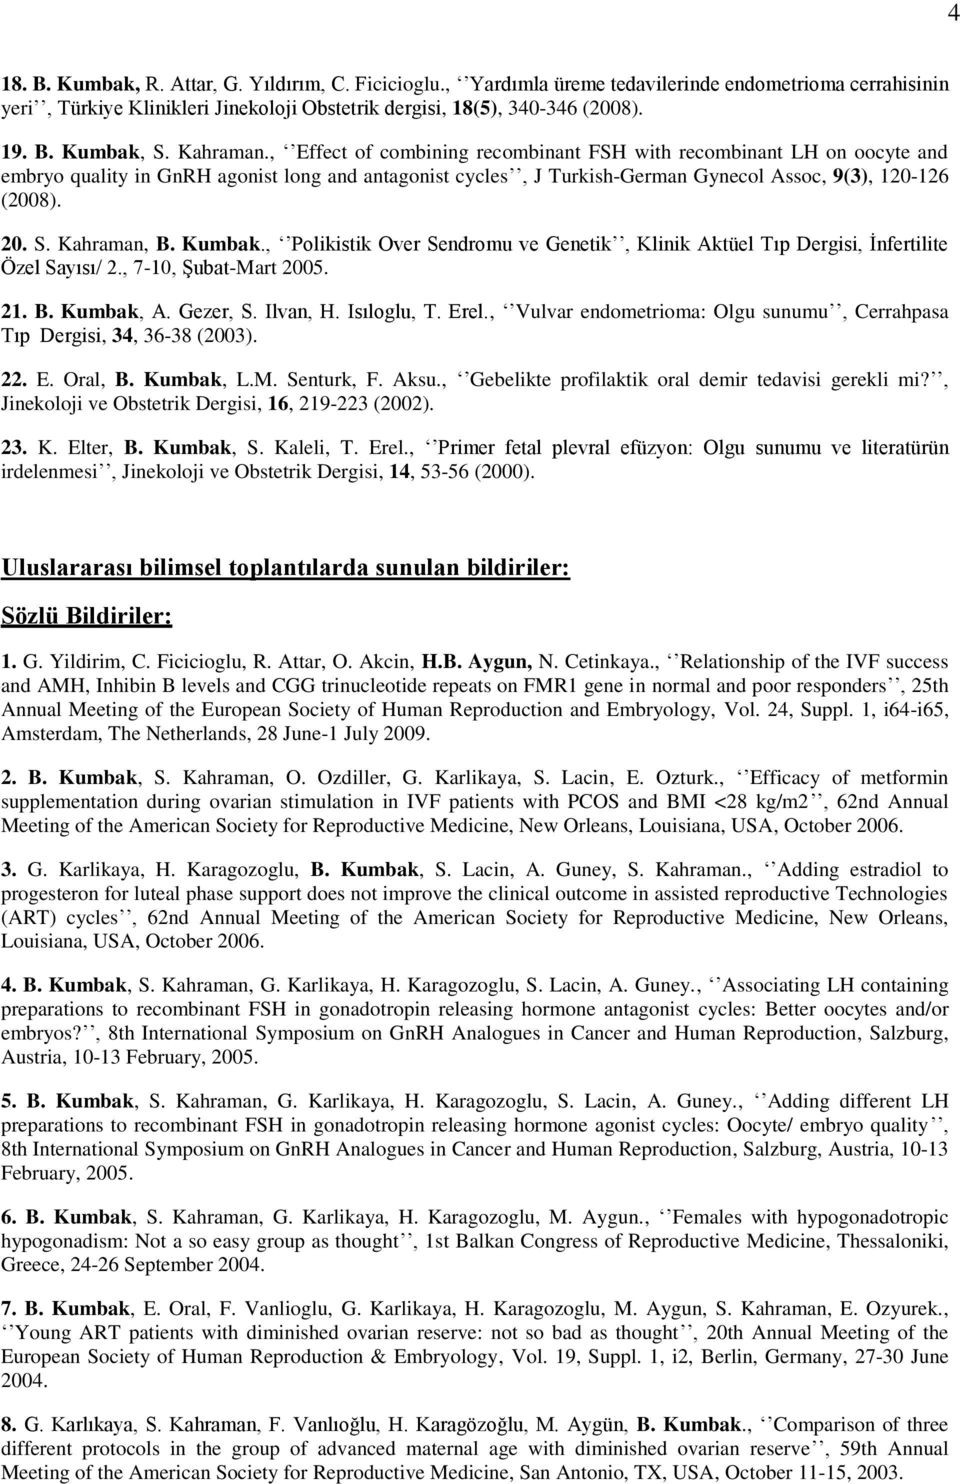 Kahraman, B. Kumbak., Polikistik Over Sendromu ve Genetik, Klinik Aktüel Tıp Dergisi, İnfertilite Özel Sayısı/ 2., 7-10, Şubat-Mart 2005. 21. B. Kumbak, A. Gezer, S. Ilvan, H. Isıloglu, T. Erel.